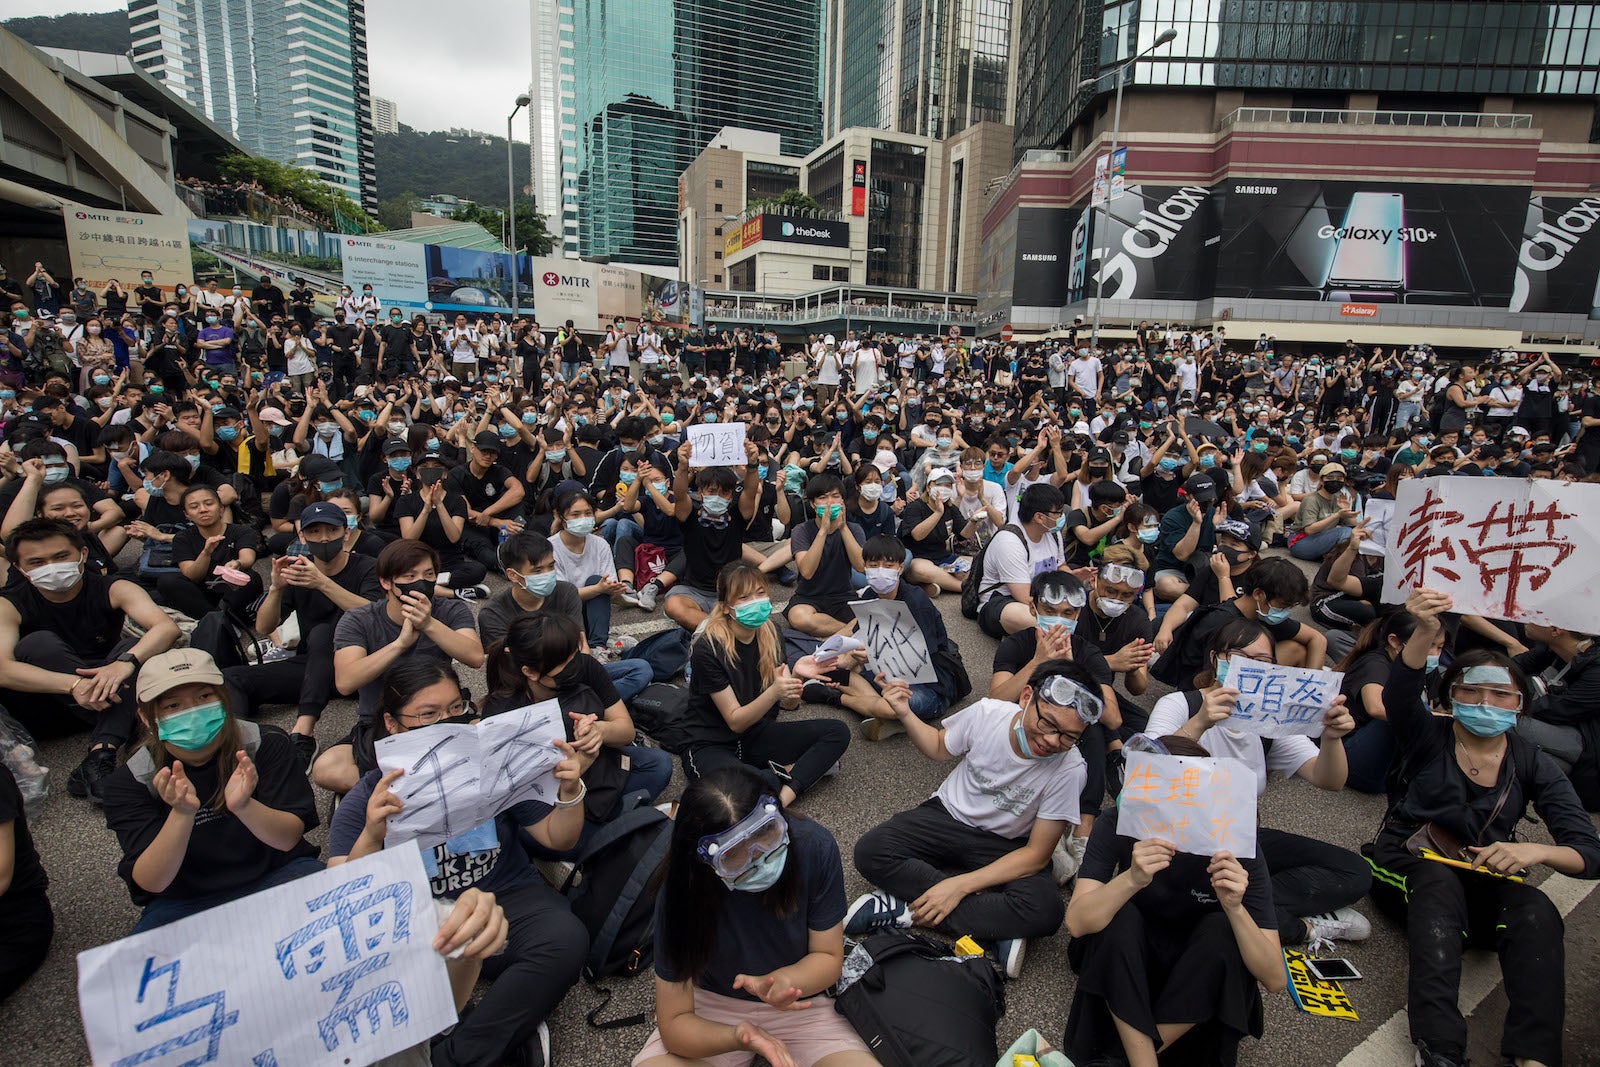 Hong Kong Protest June 12, 2019